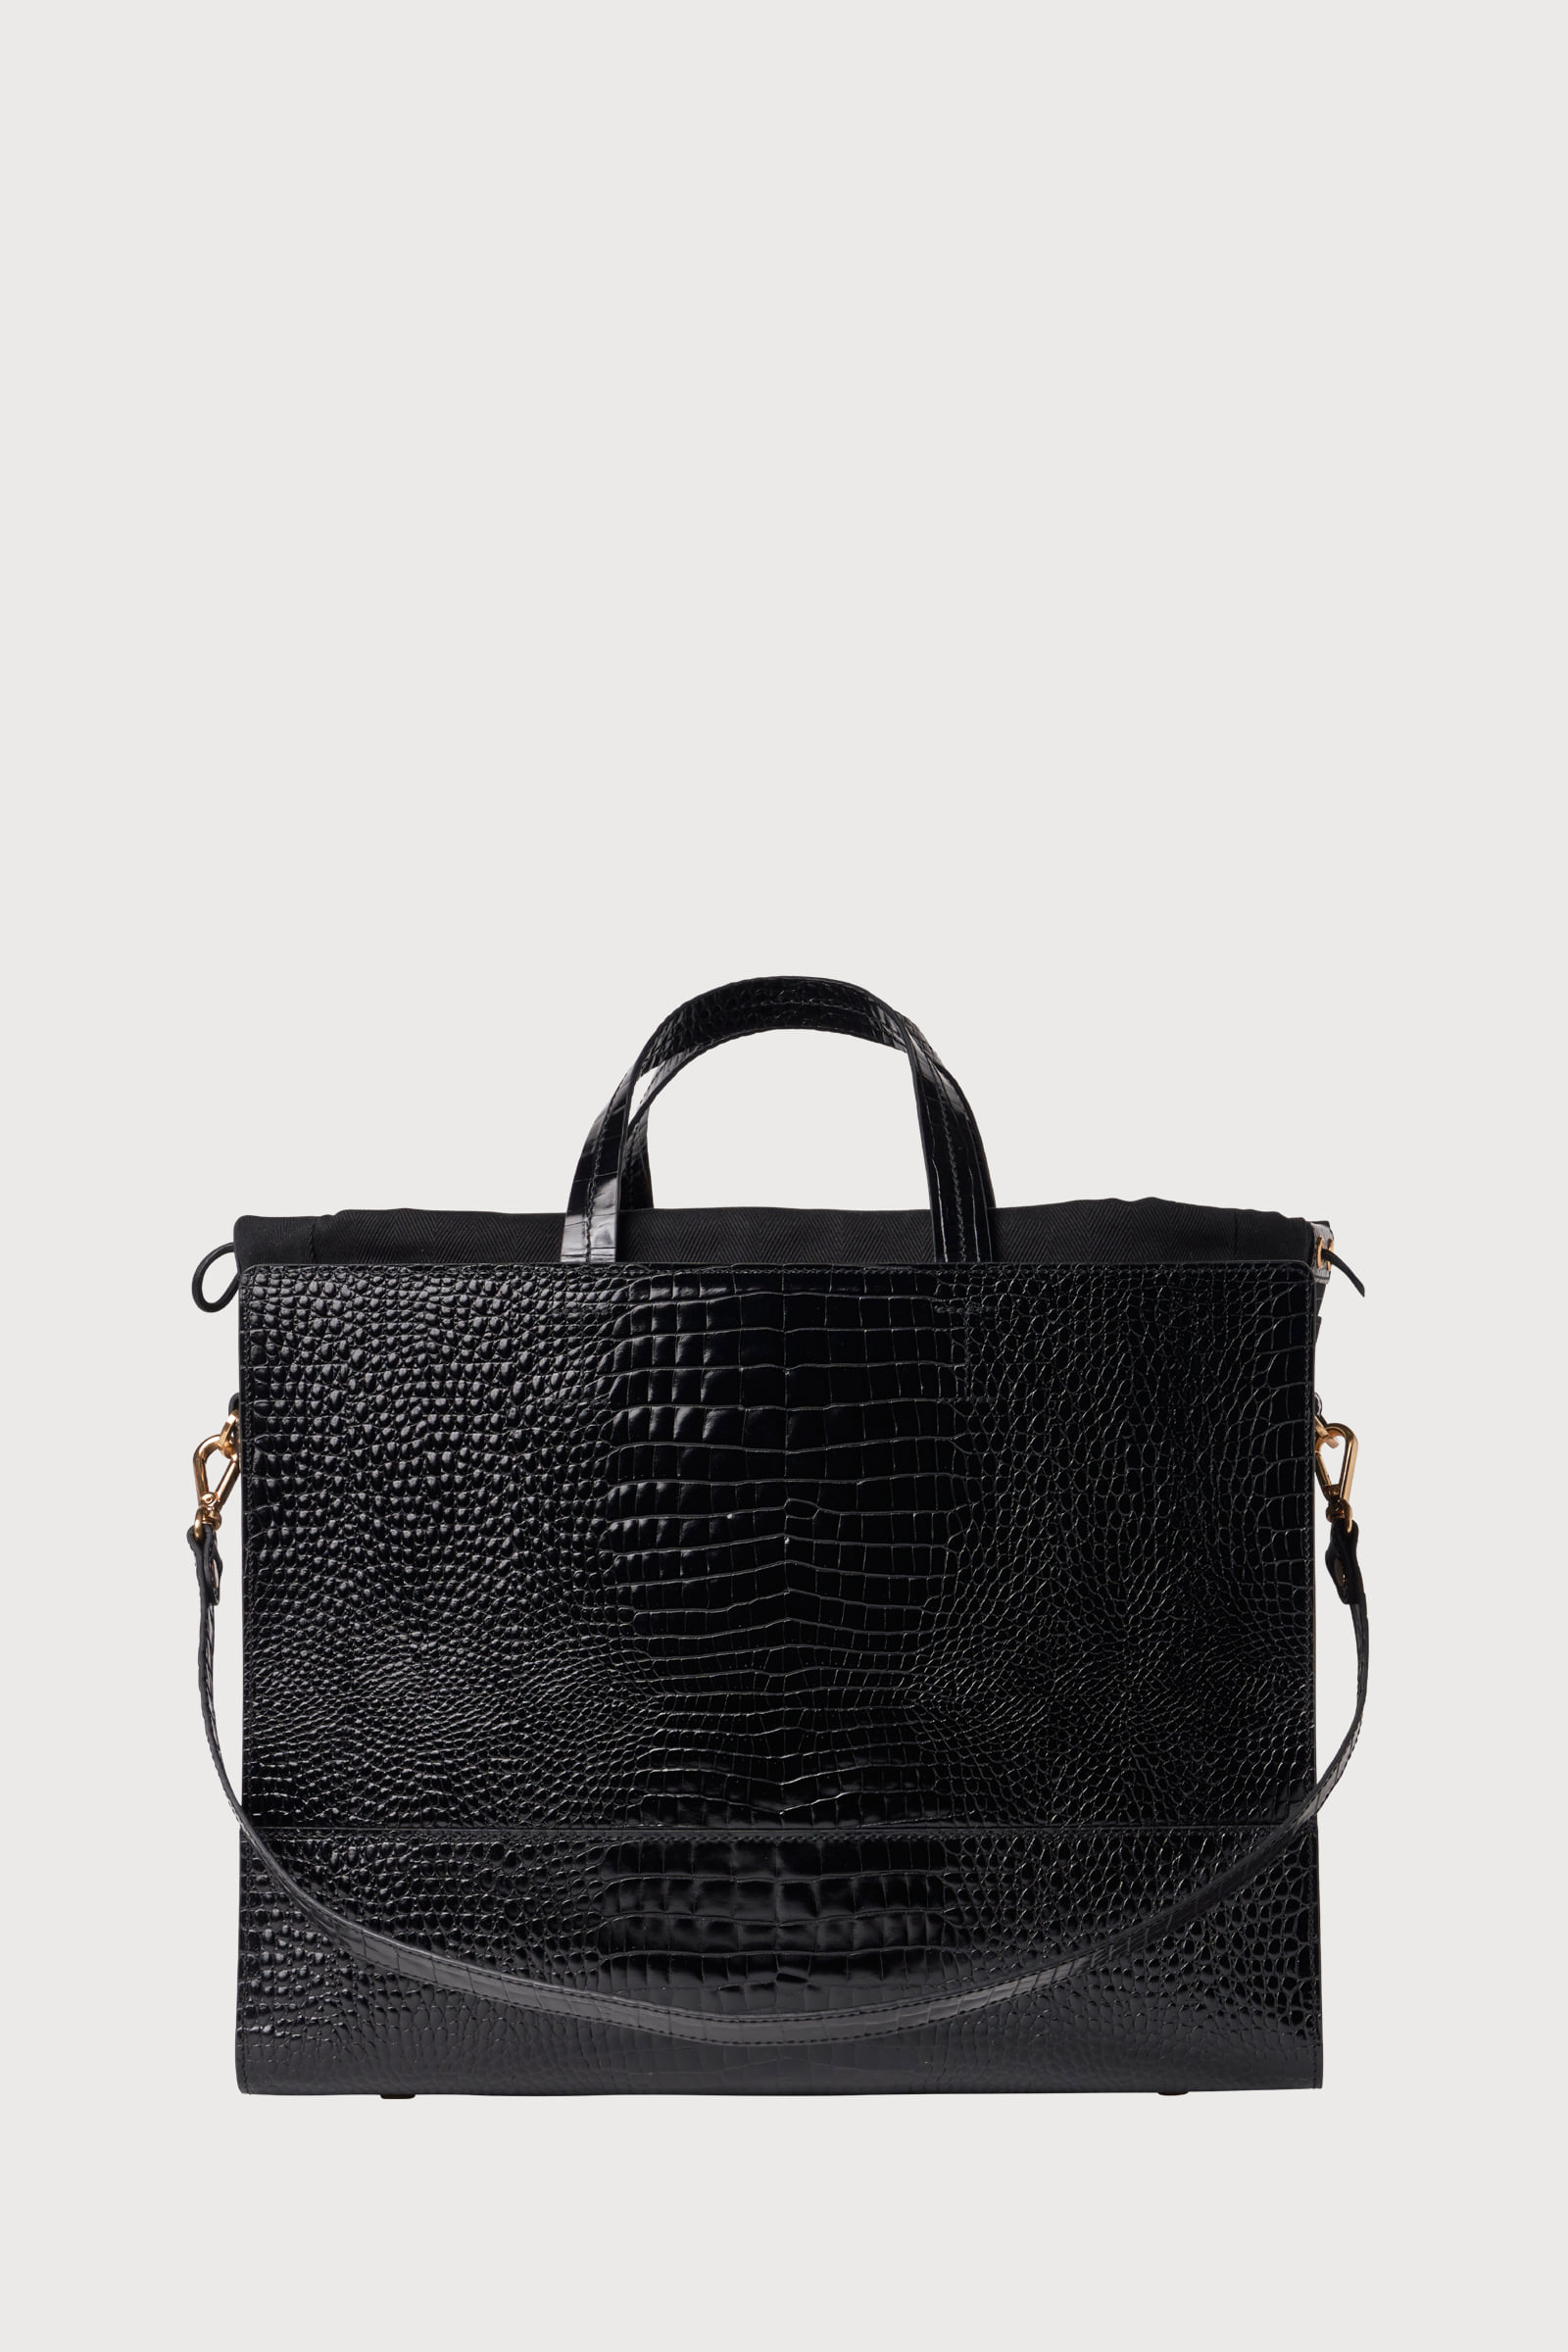 Part.3 Premium two-way bag (croc black)